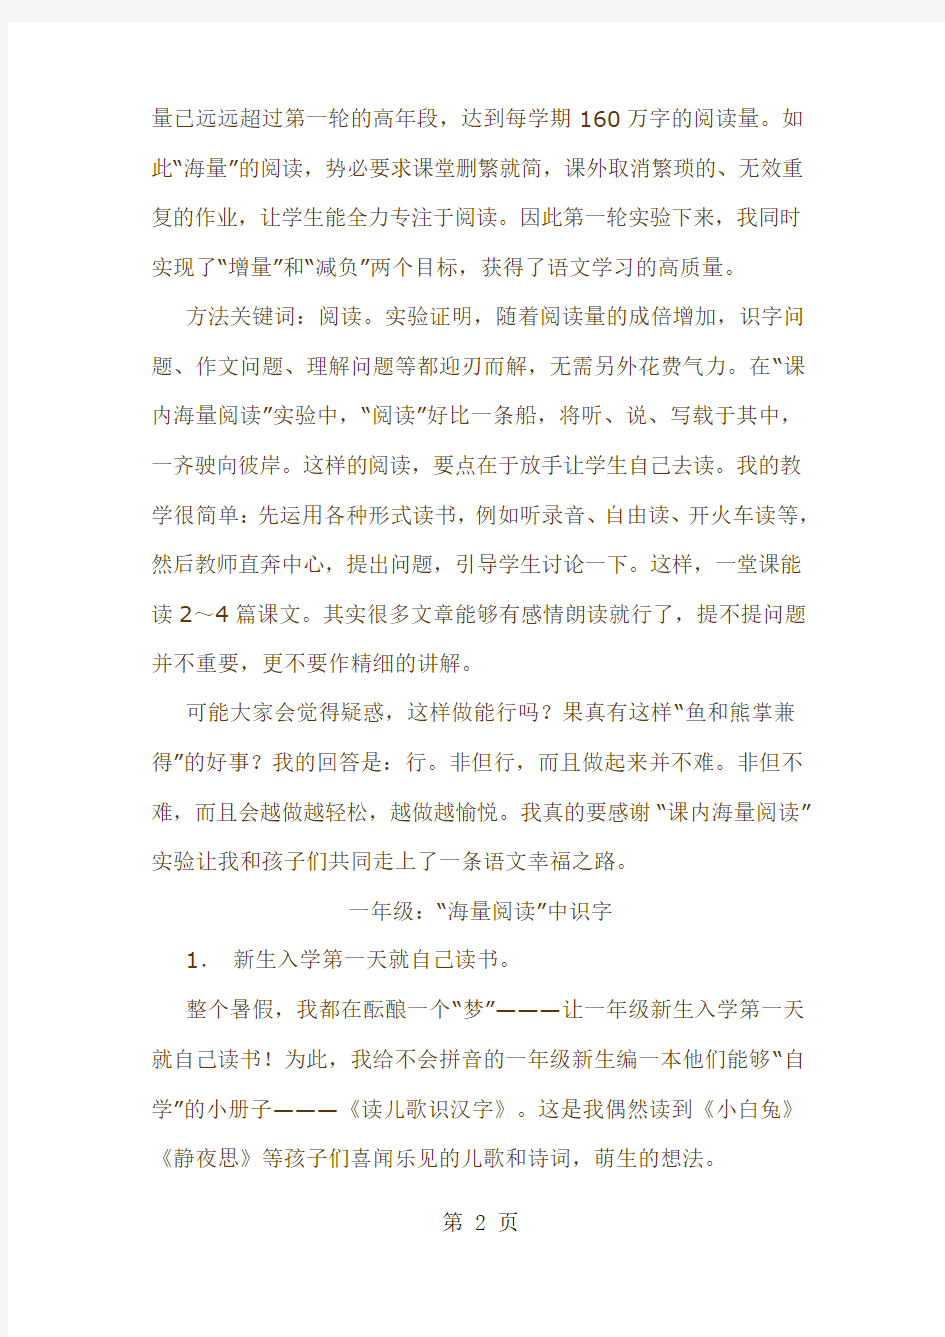 韩兴娥老师《我的“课内海量阅读”三步曲》共12页文档